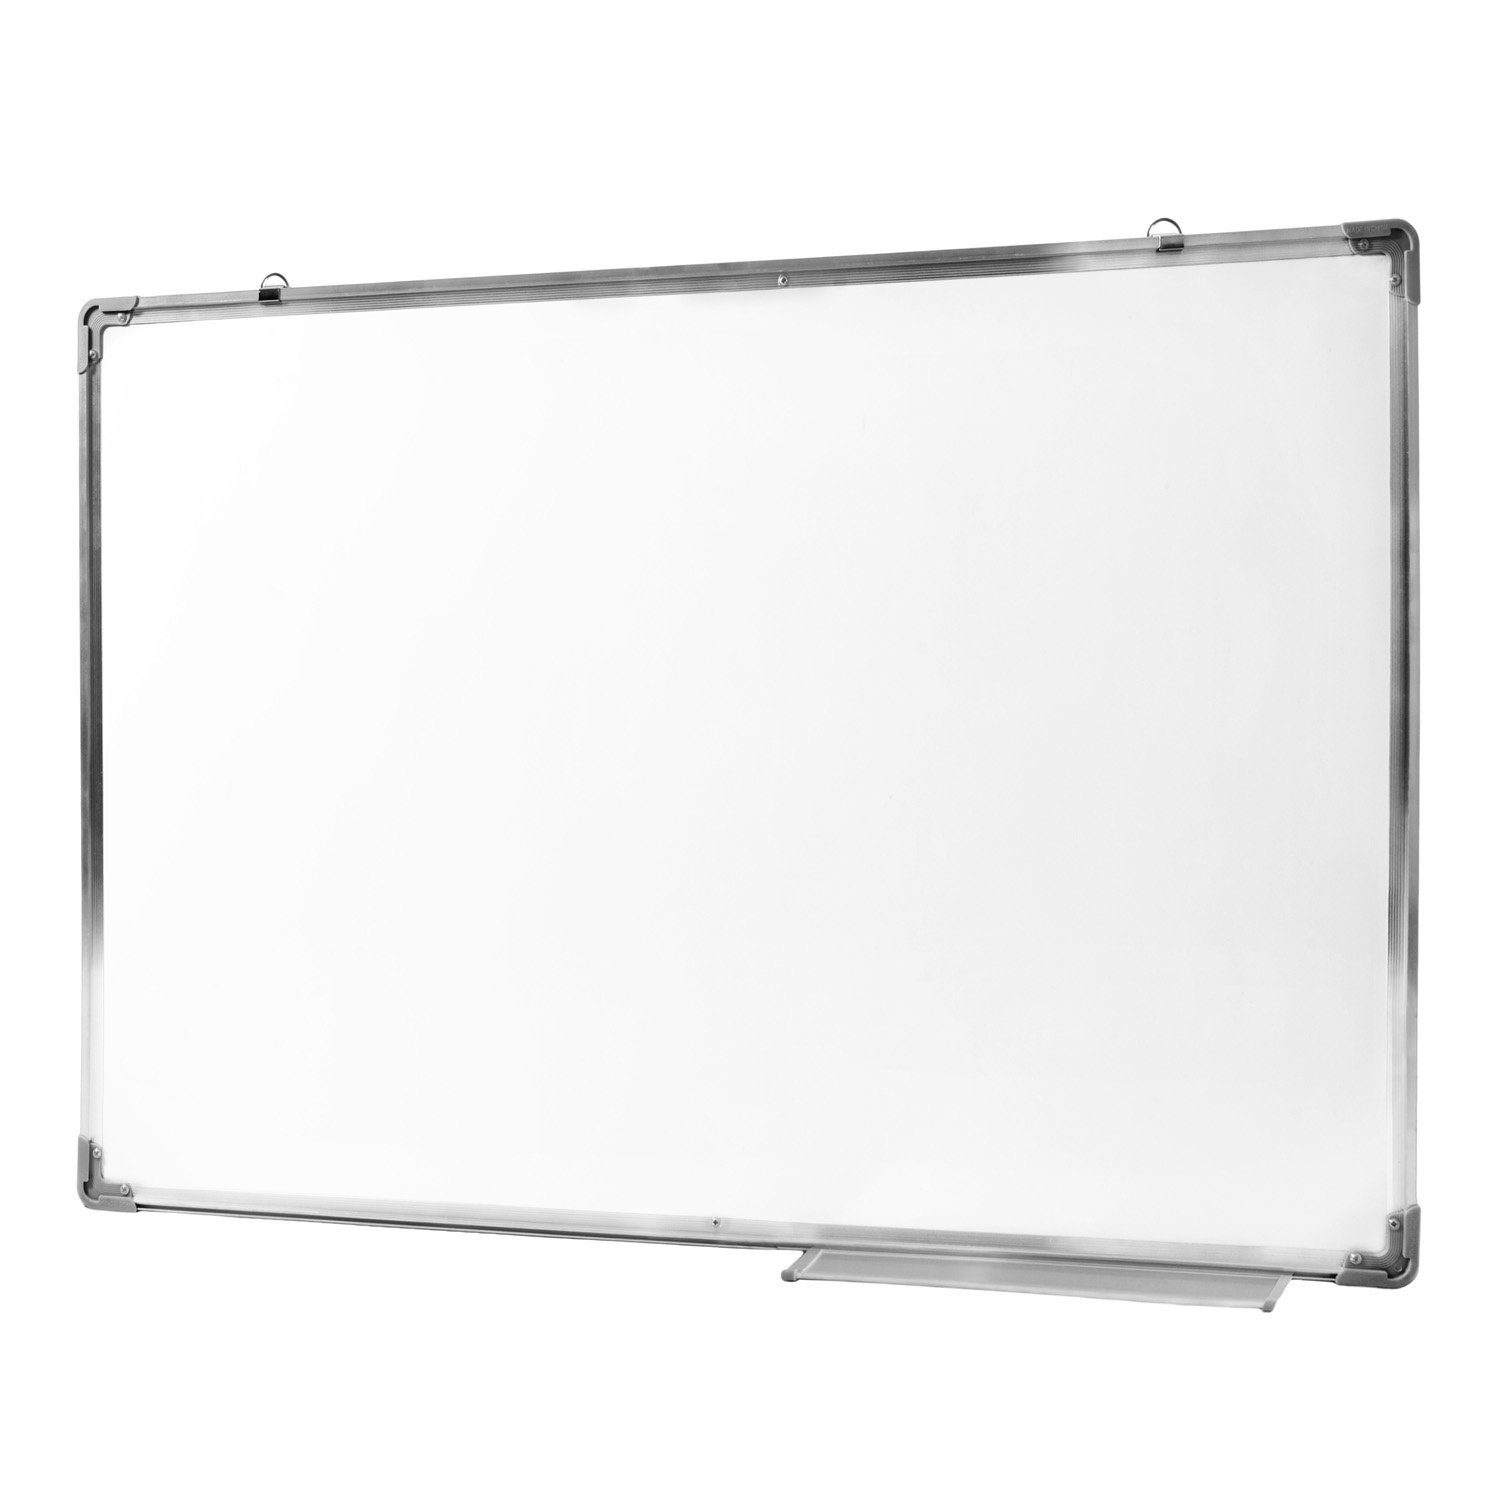 cm, Whiteboard, (60 Goods+Gadgets Wandtafel x 90 Magnet-Tafel abwischbares Memoboard),